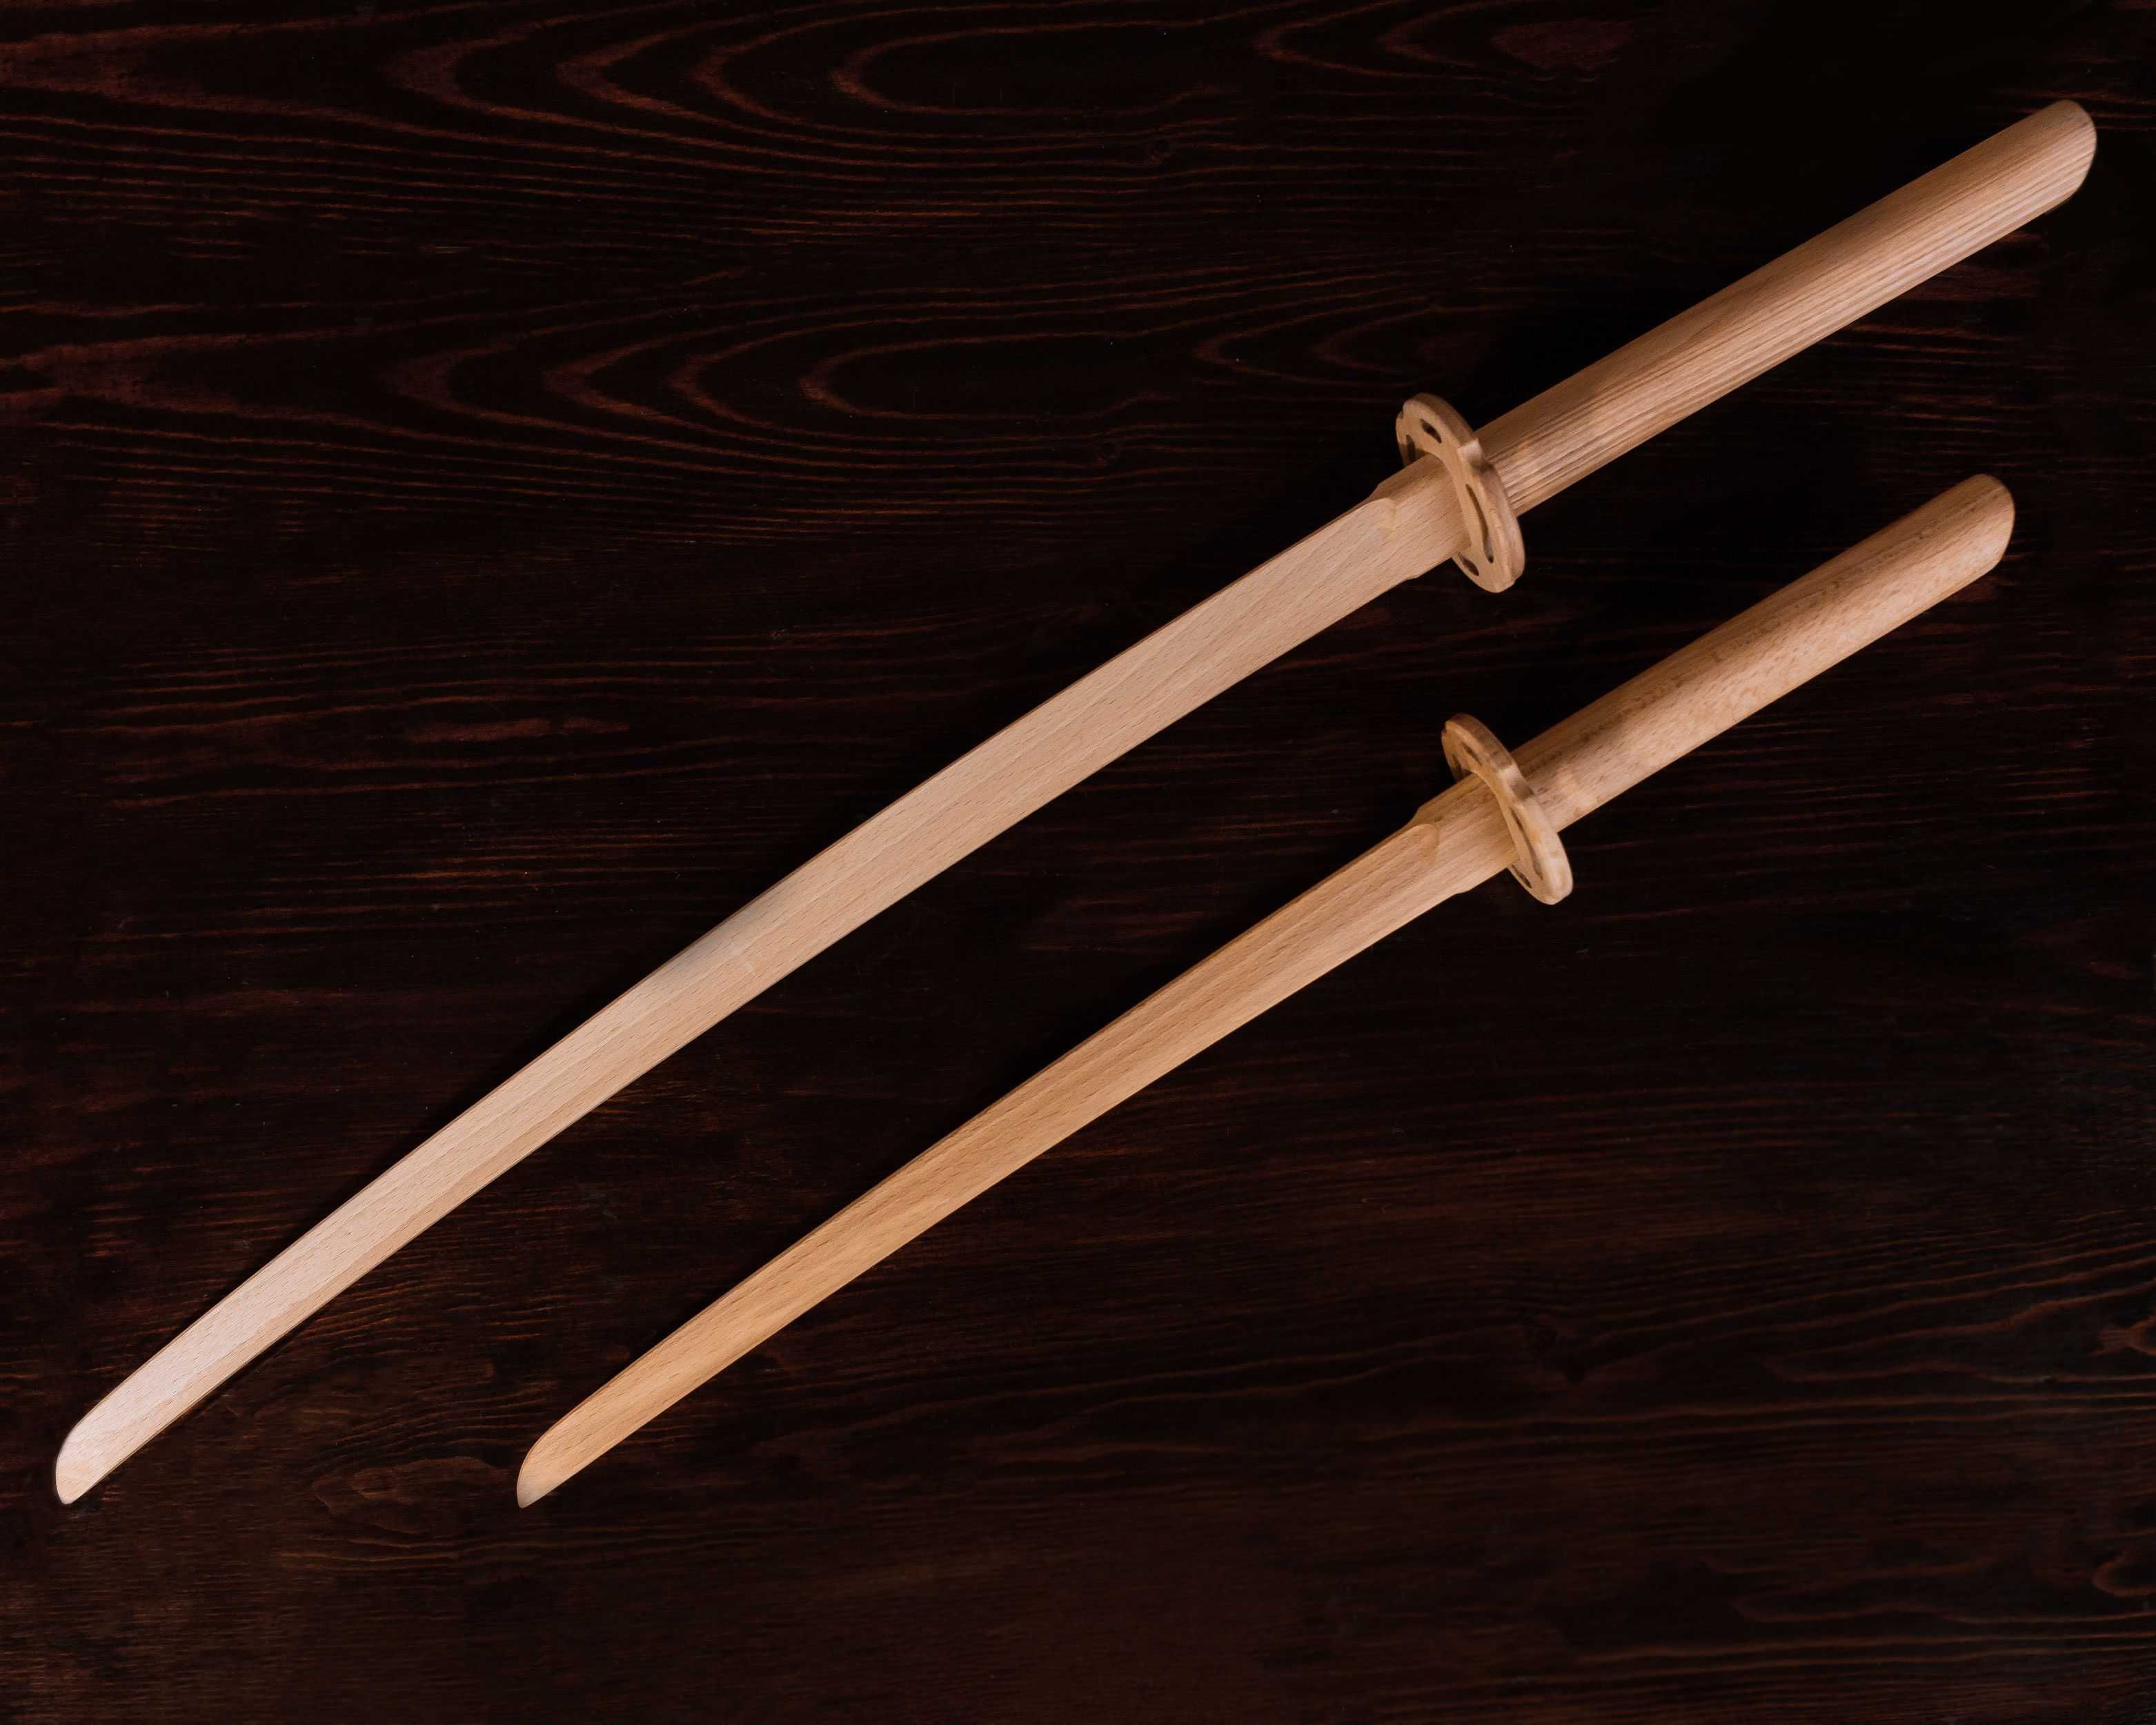 Катана, вакидзаси. Комплект японских мечей на деревянной подставке.